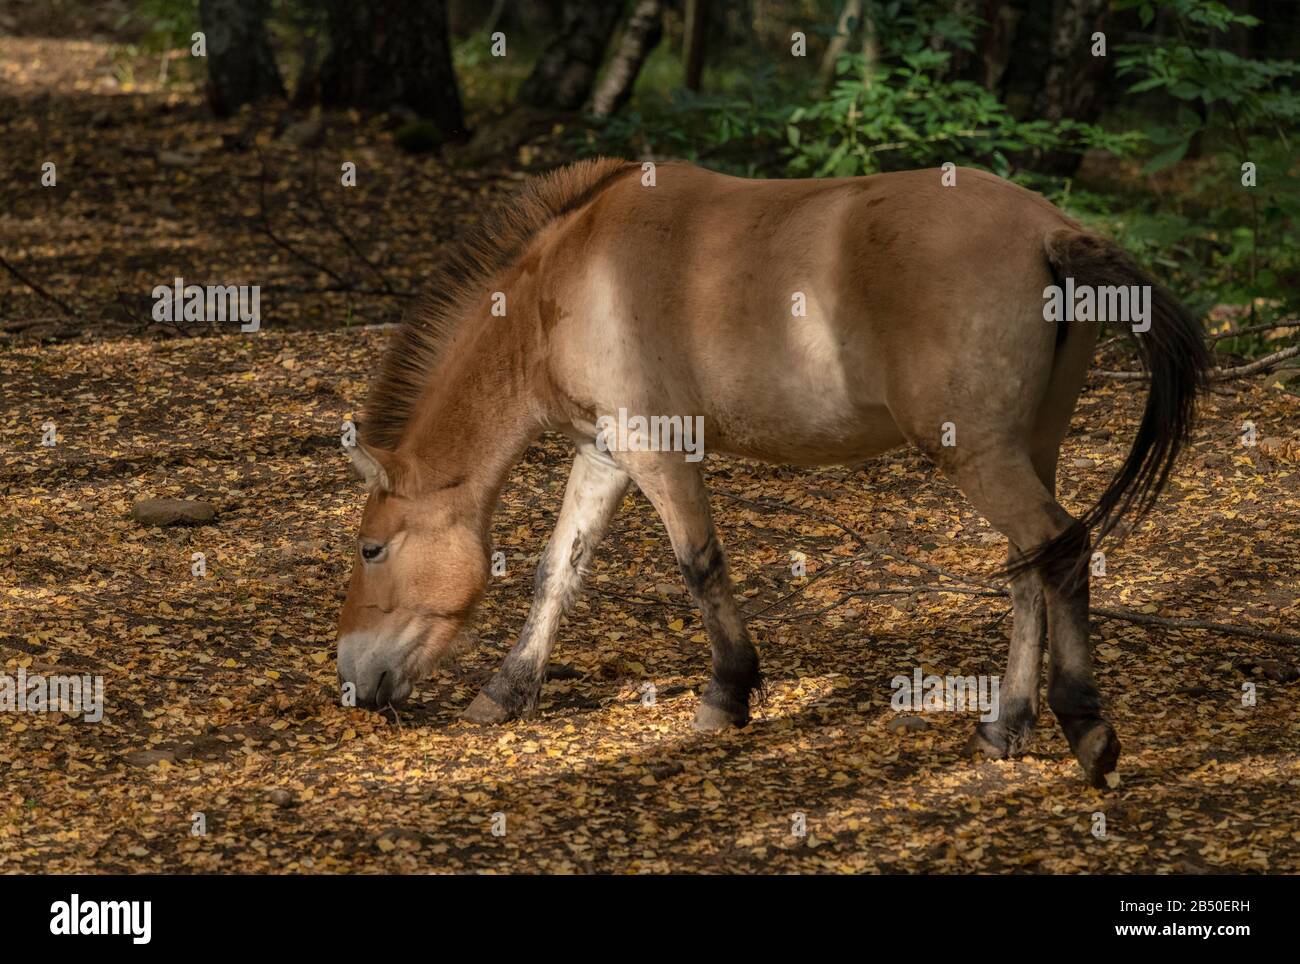 Cheval de Przewalski, Equus ferus przewalskii, vivant semi-sauvage dans les bois, Espagne. Banque D'Images